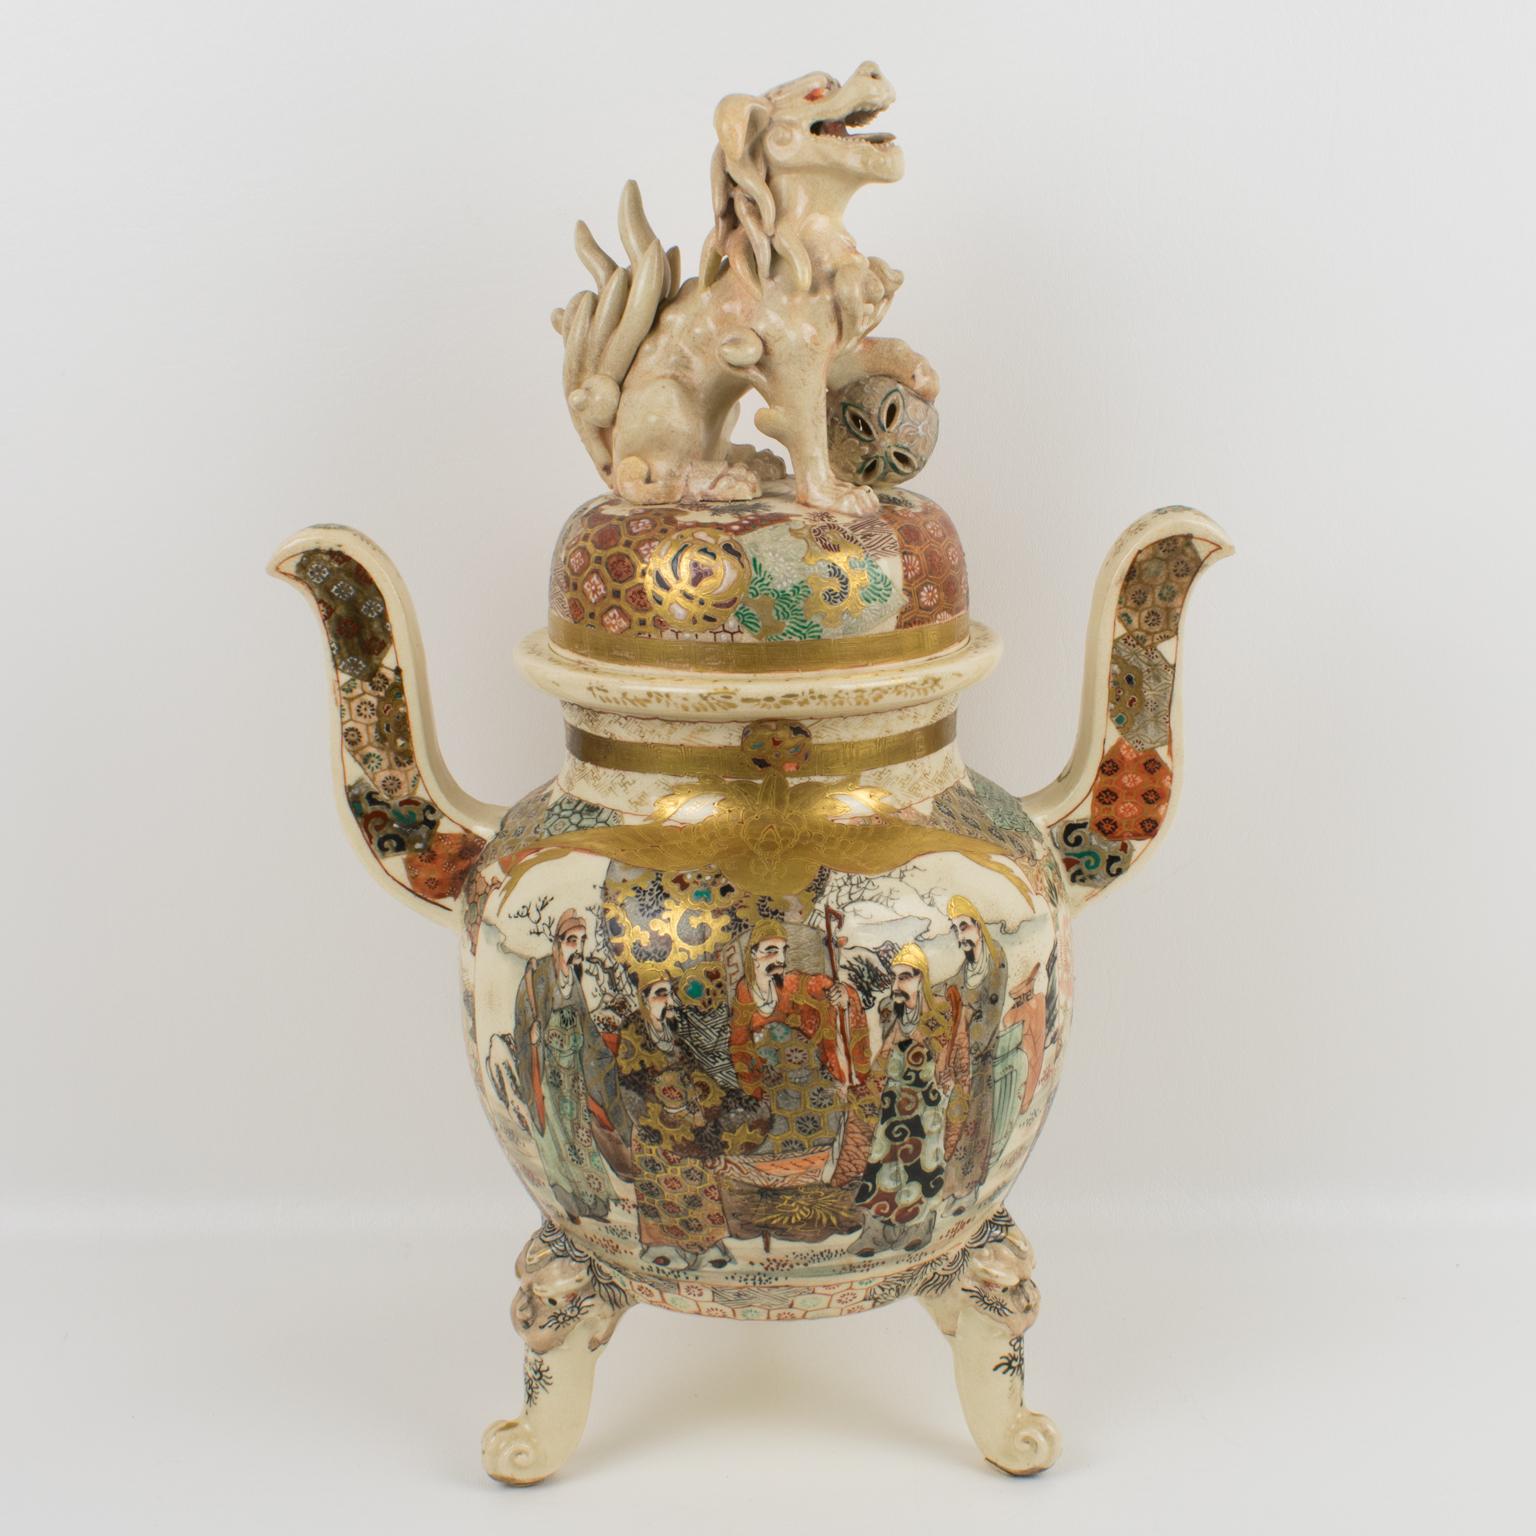 Nous présentons une exceptionnelle urne ou vase couvert en porcelaine de Satsuma de l'ère japonaise Meiji (1868-1912). Sa splendeur et son caractère unique sont indéniables. La jarre à couvercle est richement décorée d'émaux et de scènes de Lohan